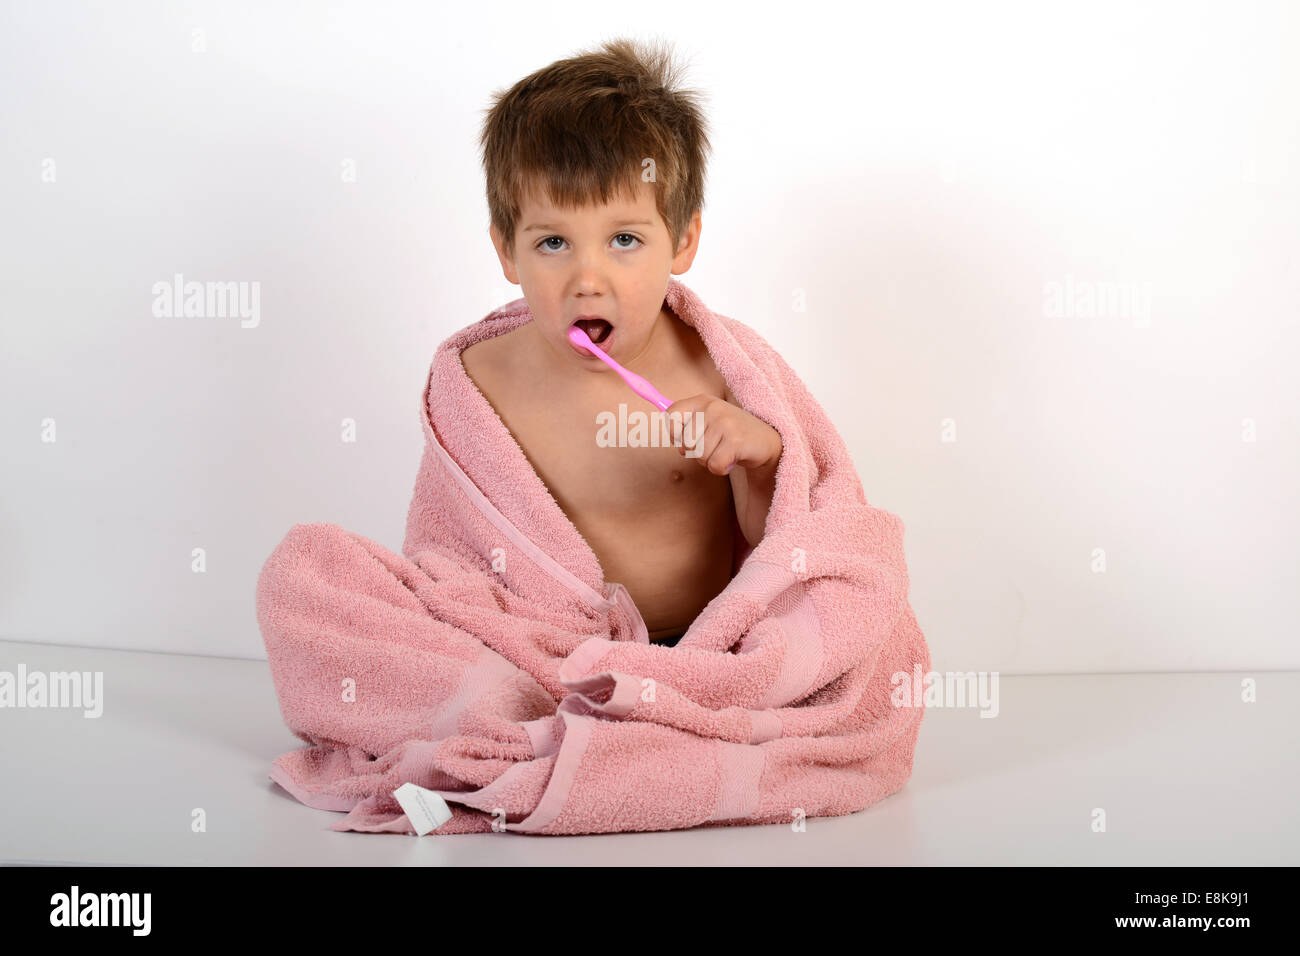 Jeune garçon enfant Les enfants de se brosser les dents de nettoyage Banque D'Images